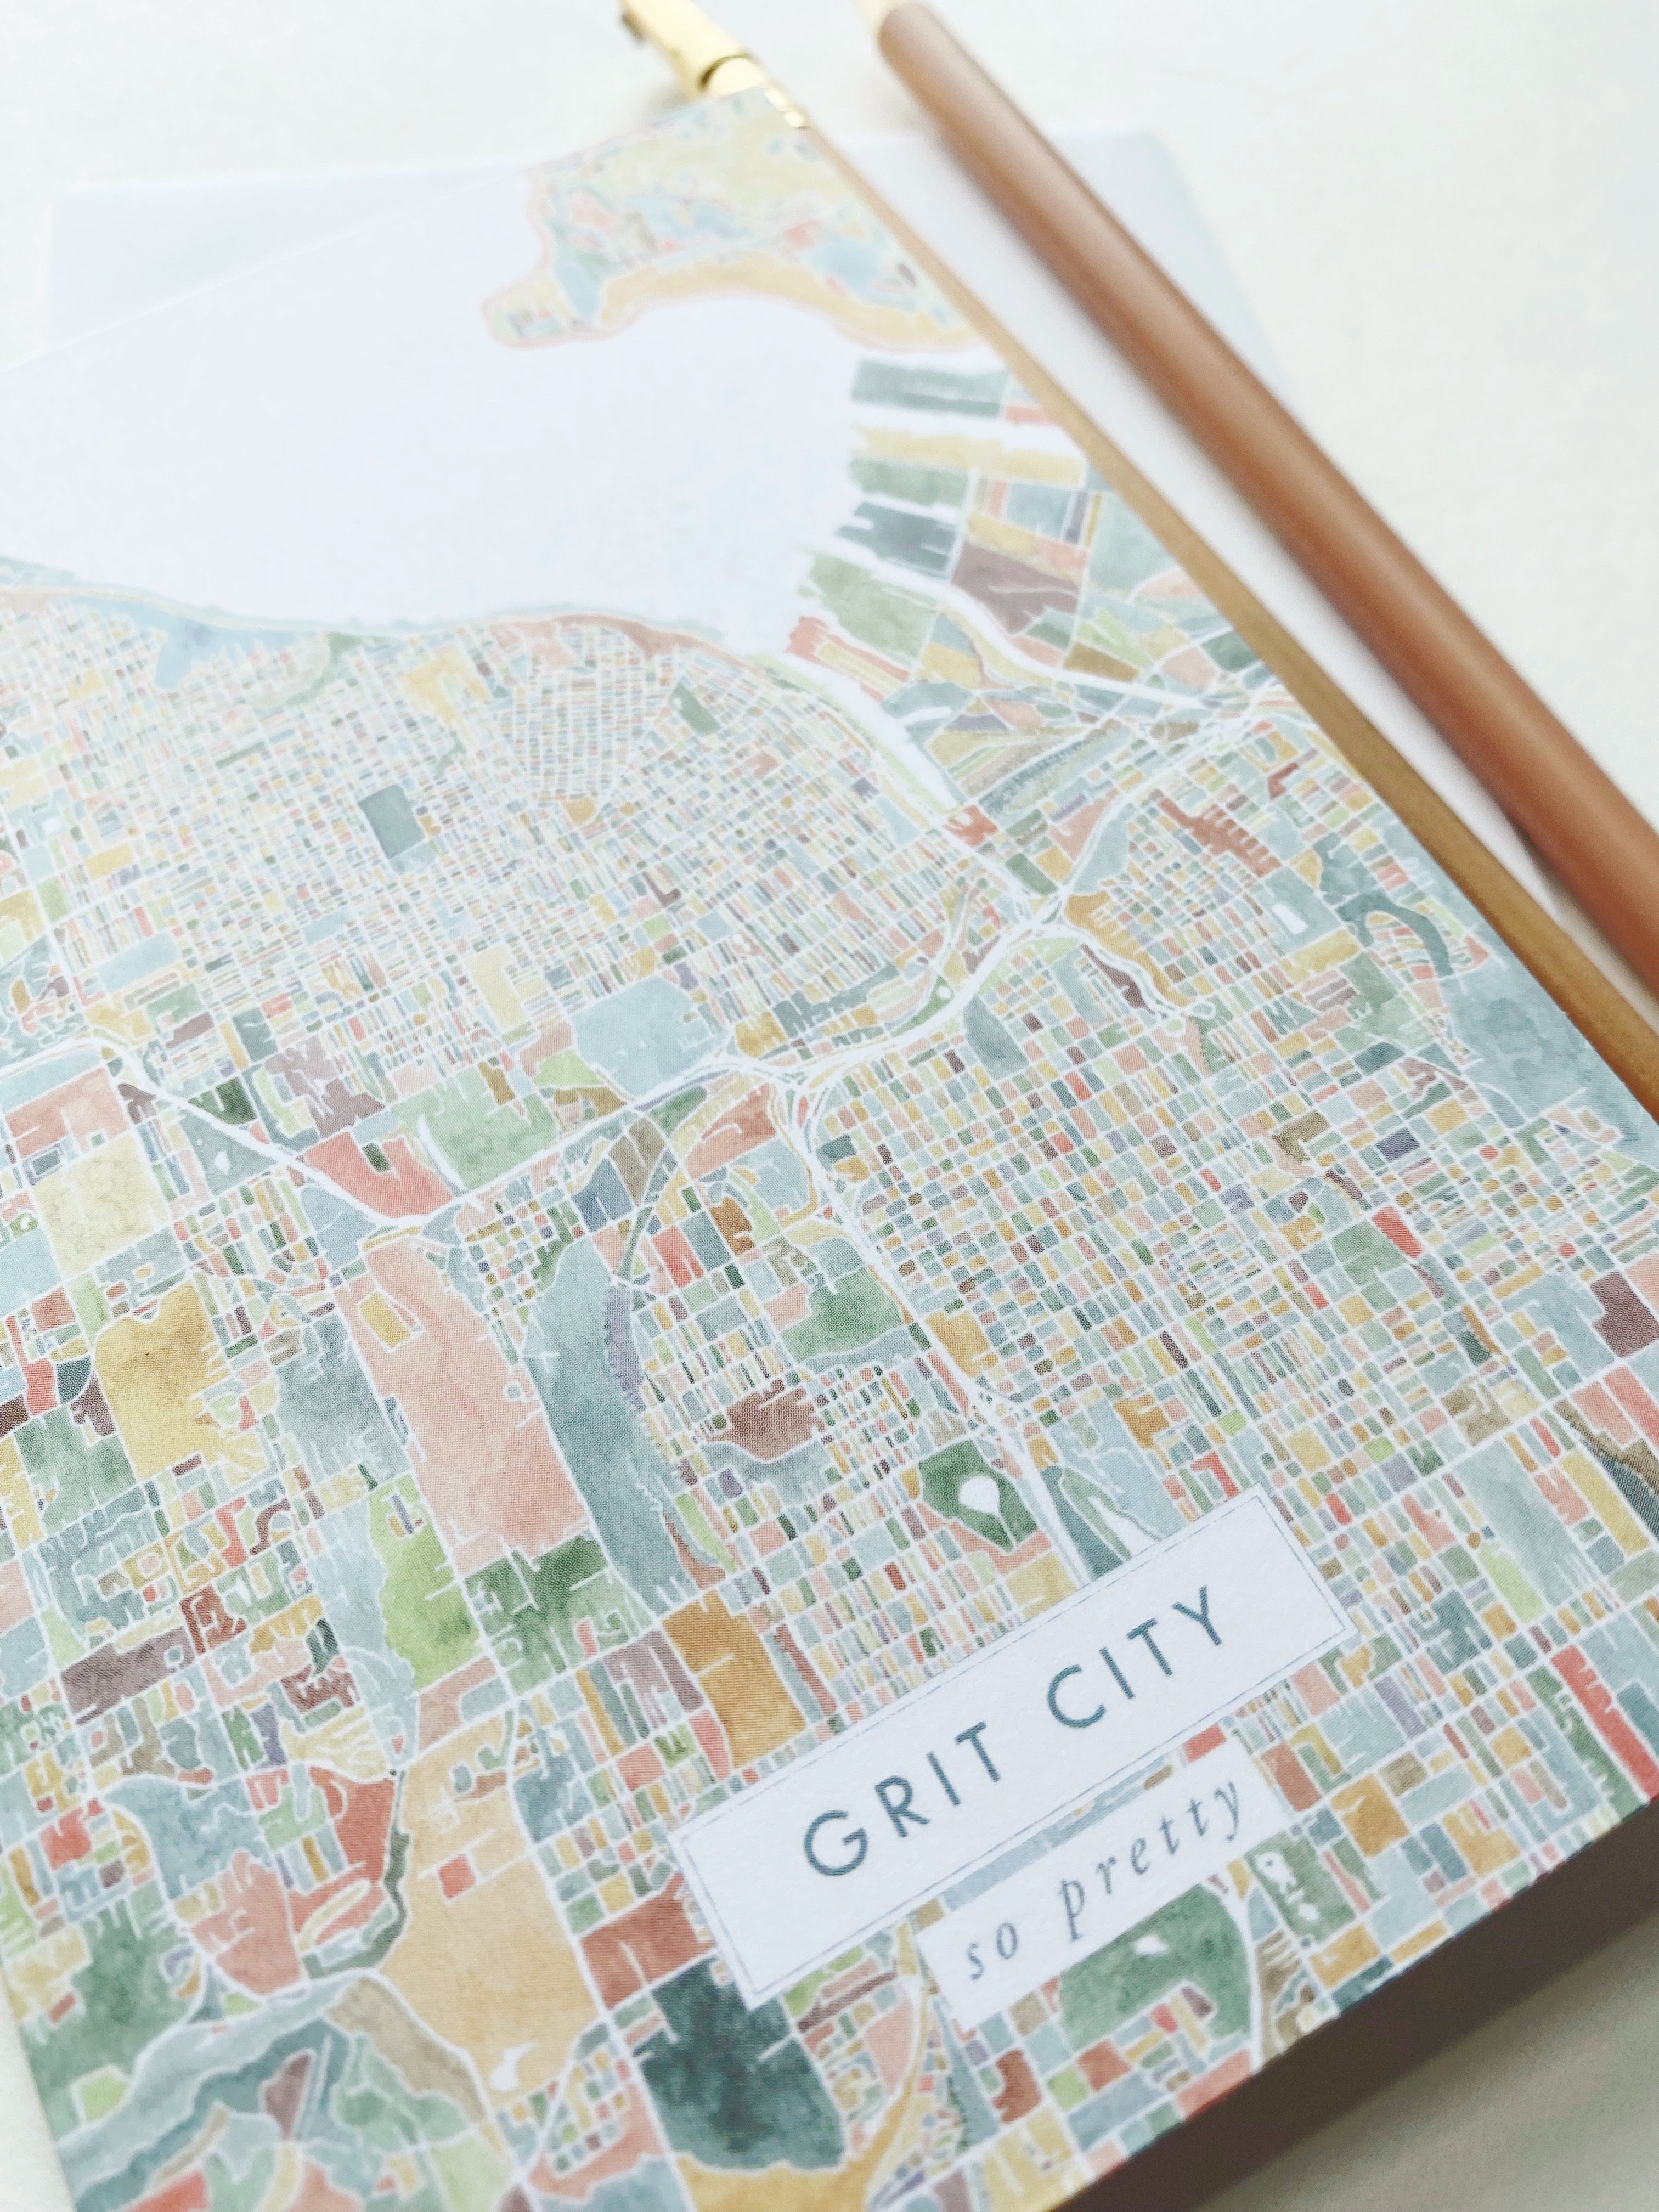 GRIT CITY Tacoma Washington Watercolor Map - city nickname greeting card